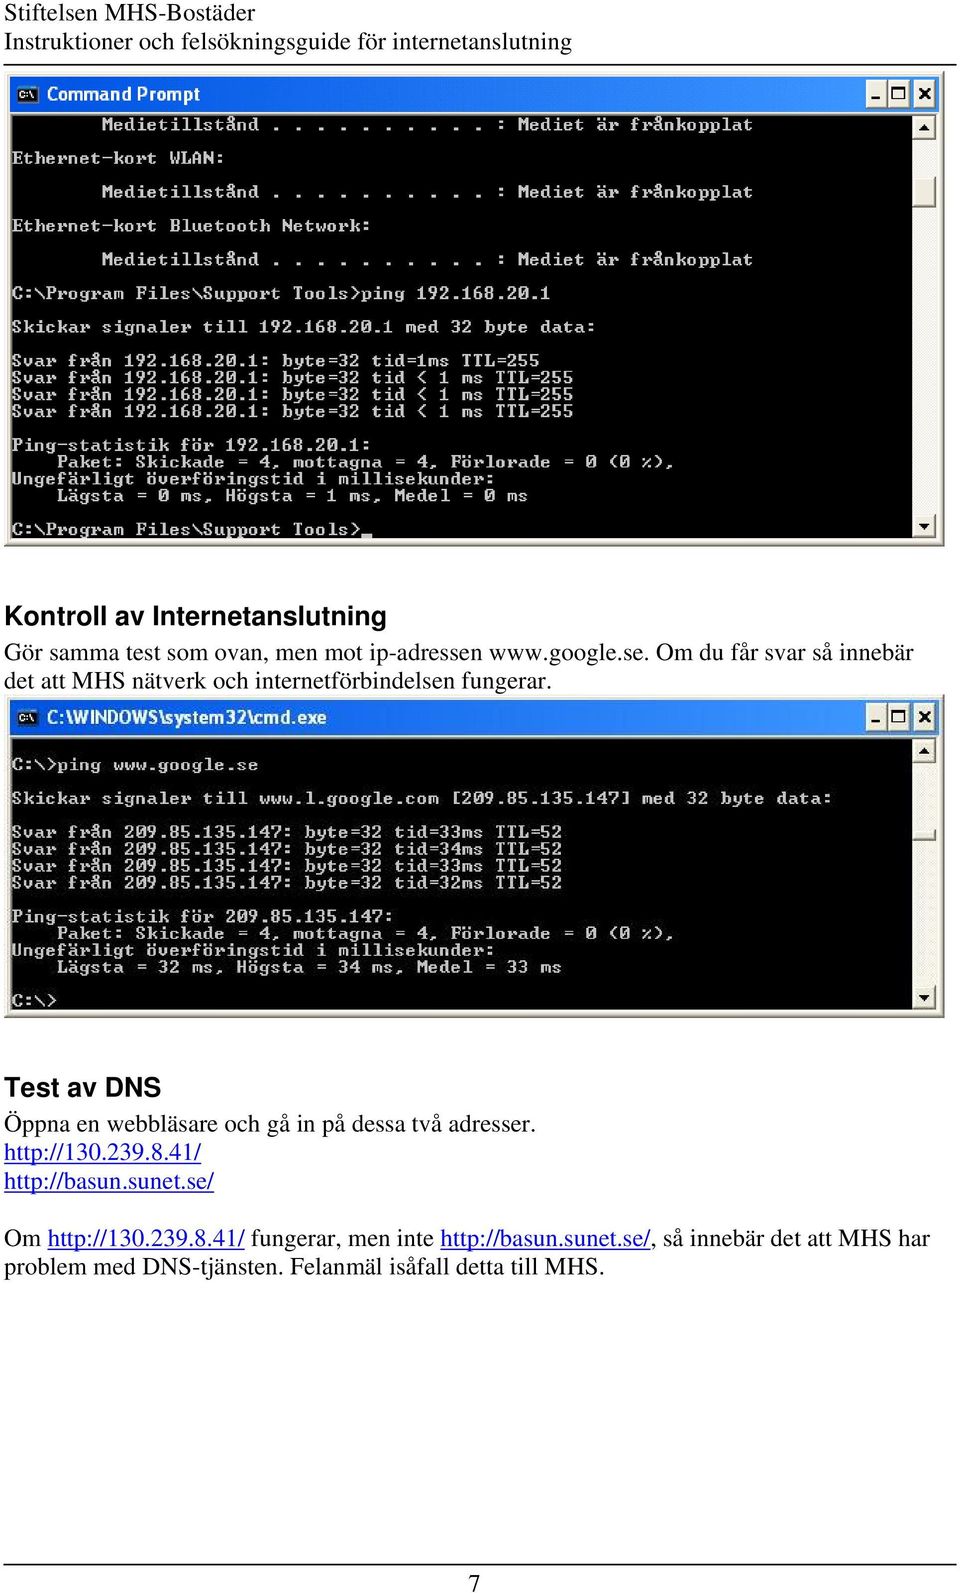 Test av DNS Öppna en webbläsare och gå in på dessa två adresser. http://130.239.8.41/ http://basun.sunet.